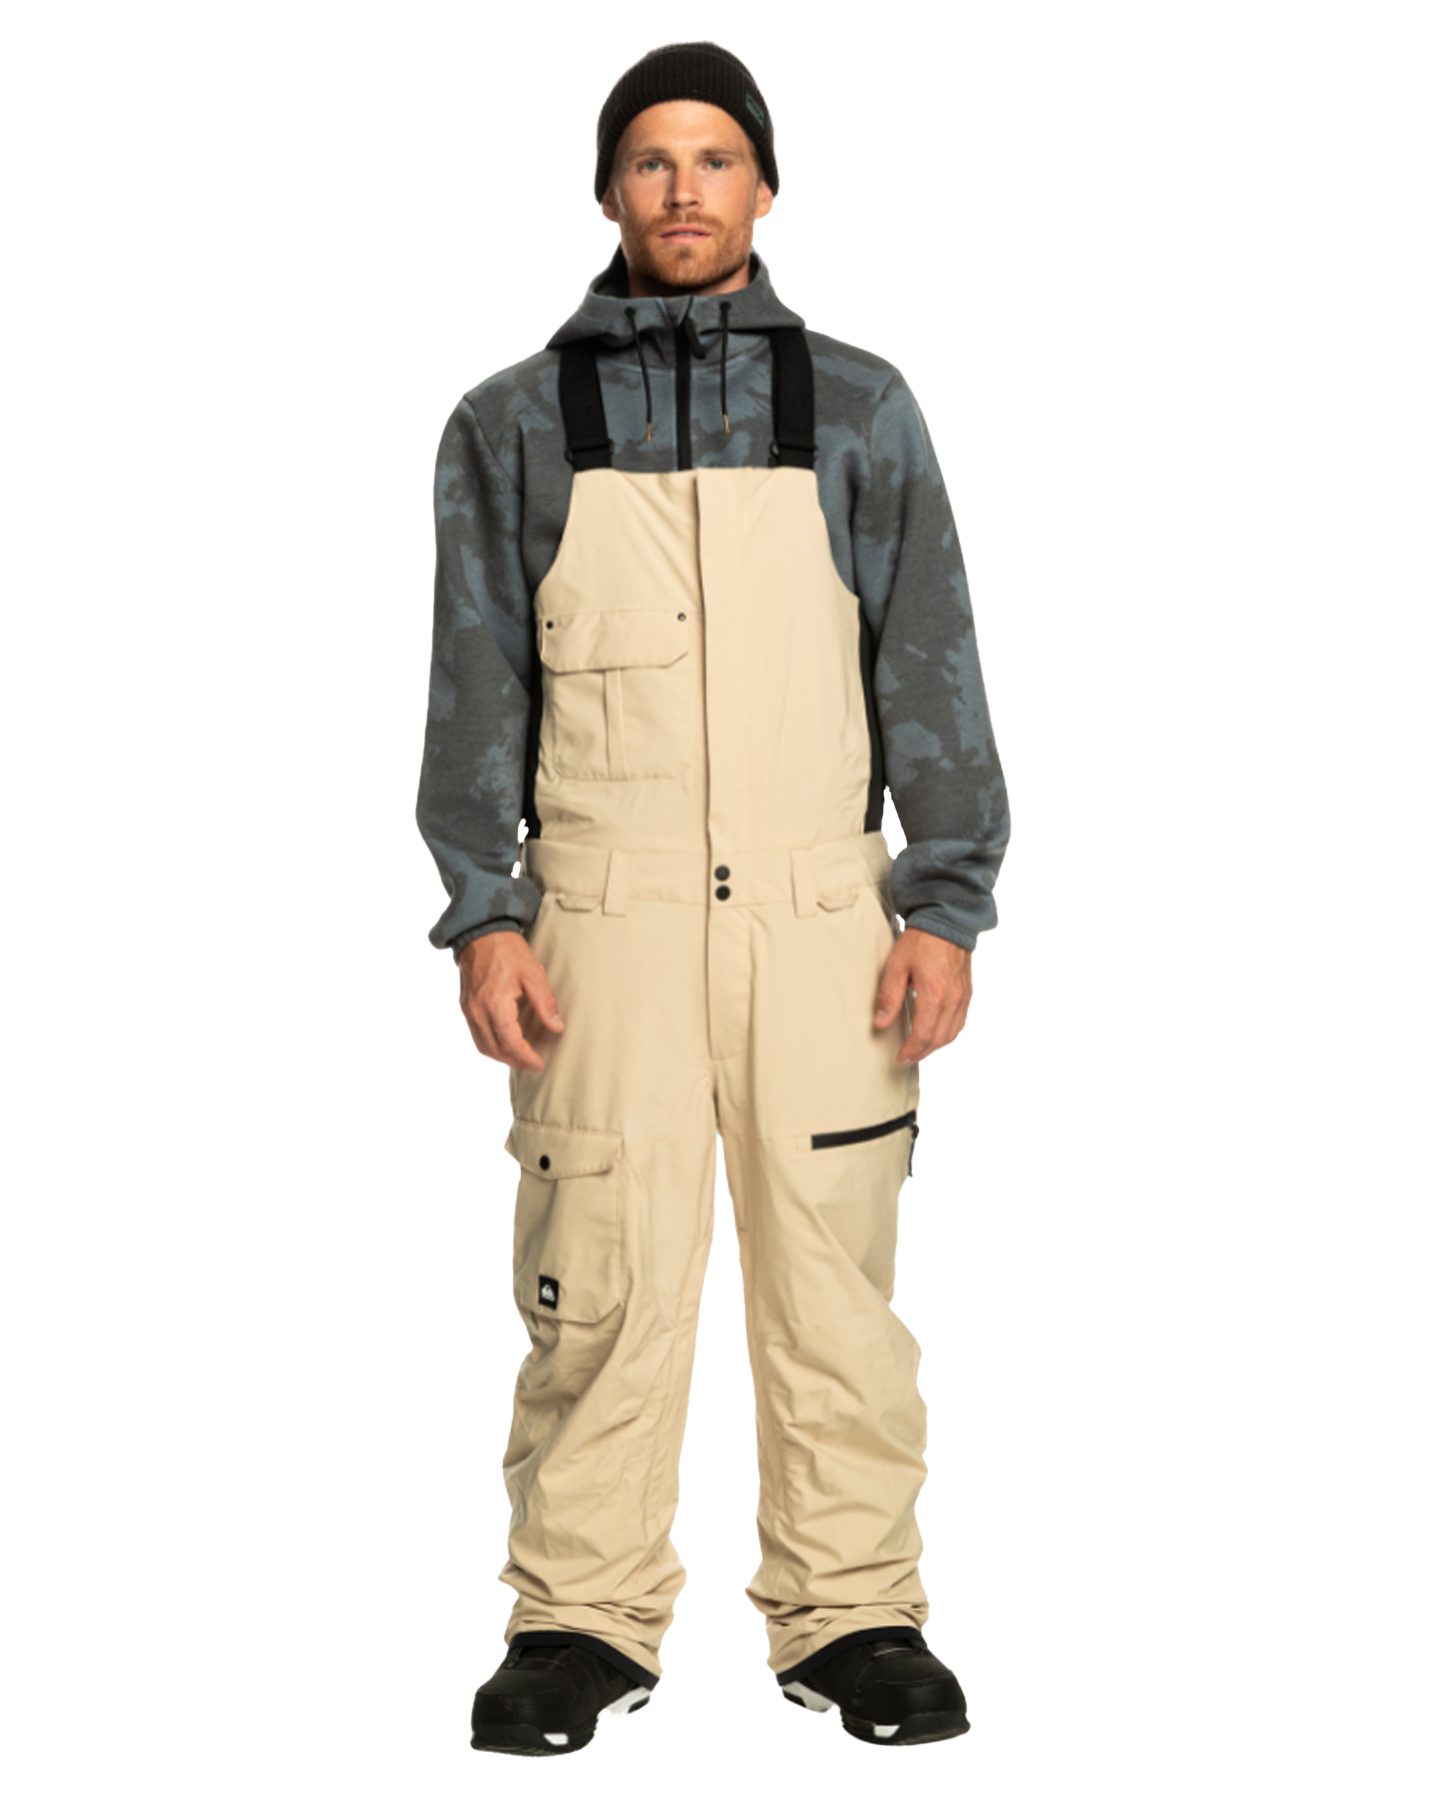 Quiksilver Men's Utility Technical Snow Bib Pants - Pale Khaki Men's Snow Bibs - Trojan Wake Ski Snow